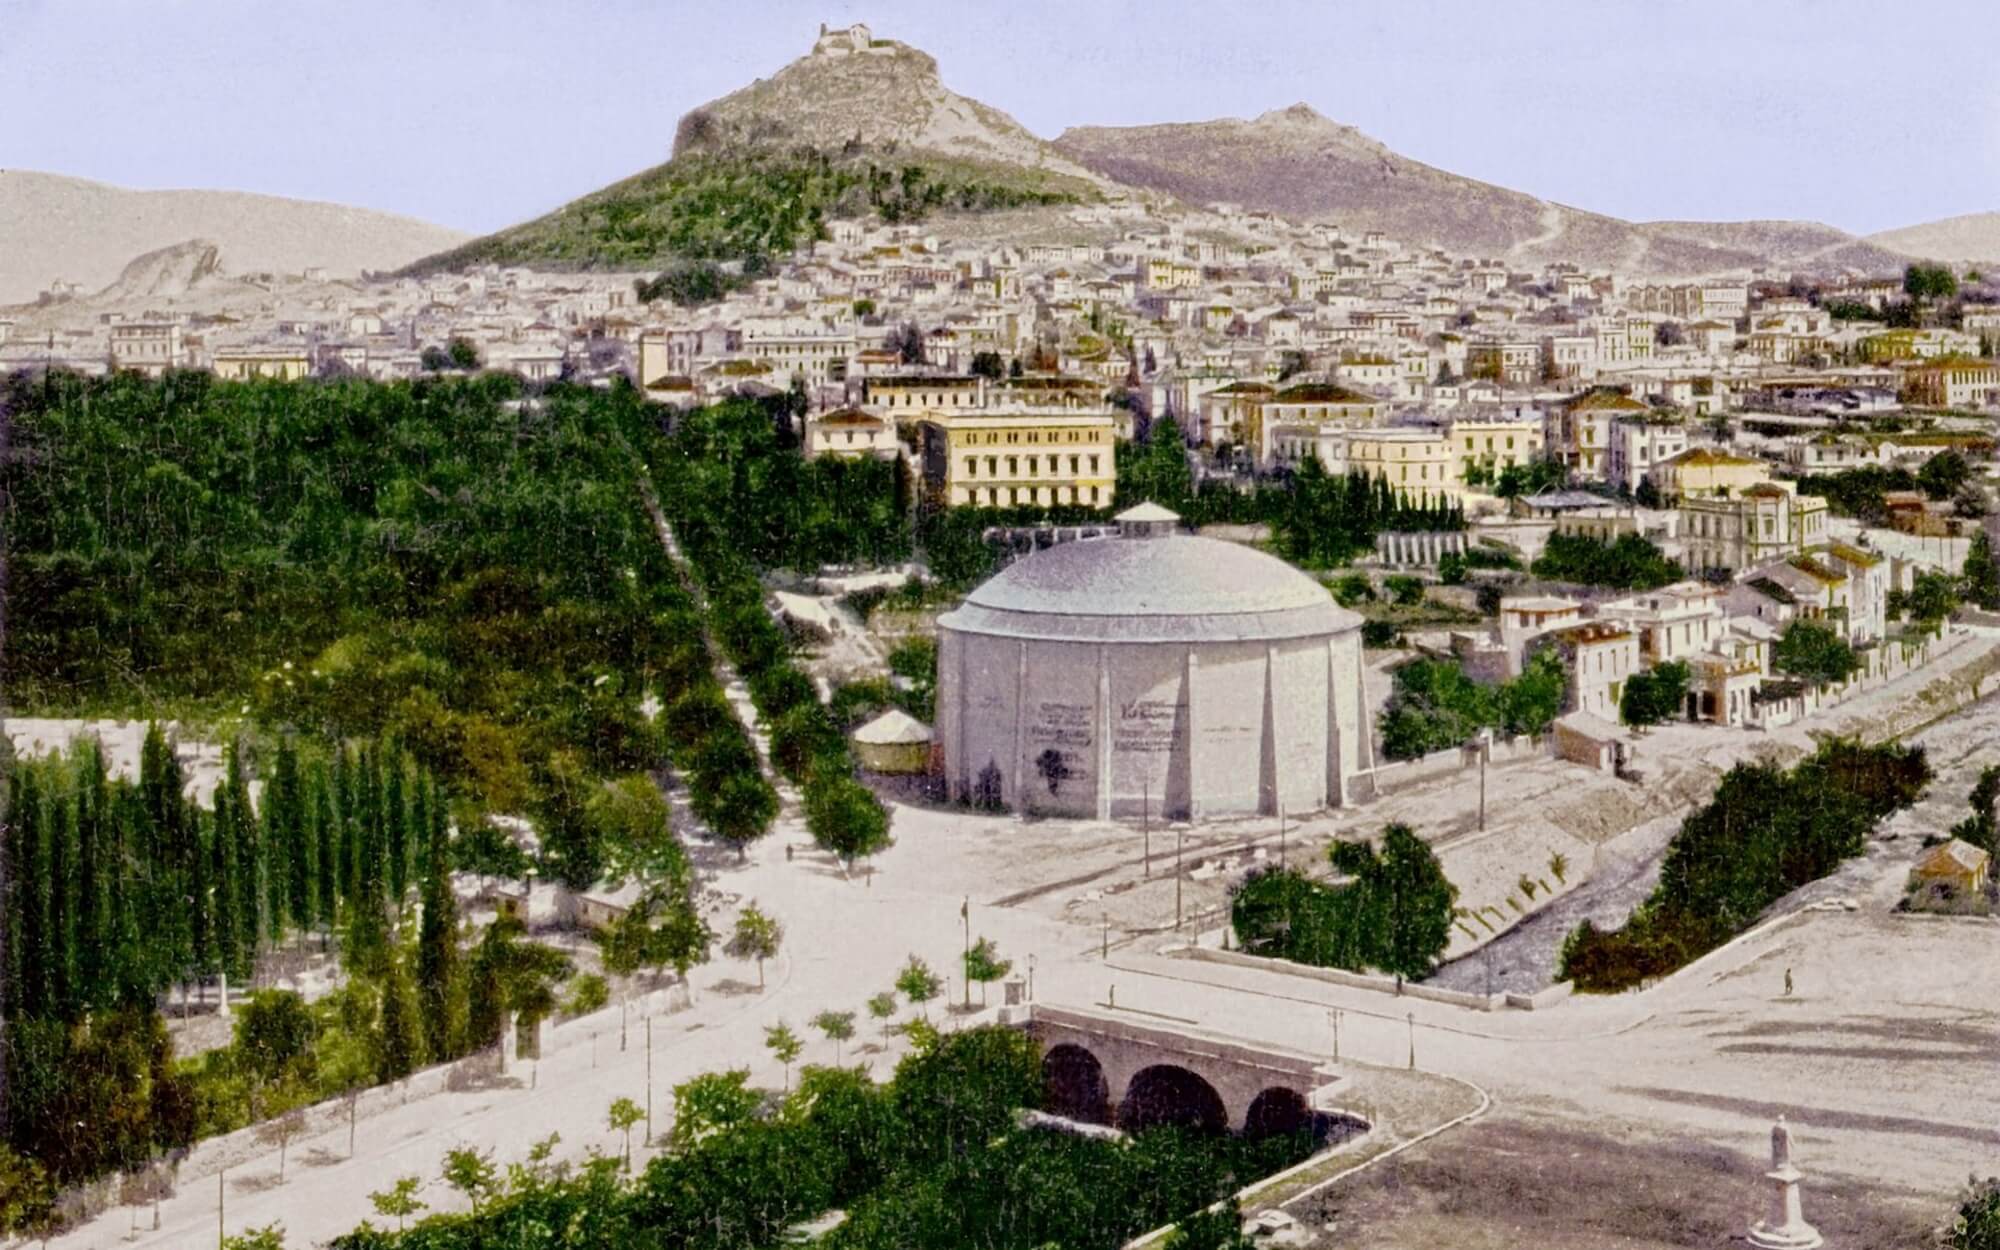 Ιλισσός: “Αναδύεται” και αλλάζει την Αθήνα – Πεζόδρομος από την Ακρόπολη με “άρωμα” Σωκράτη!